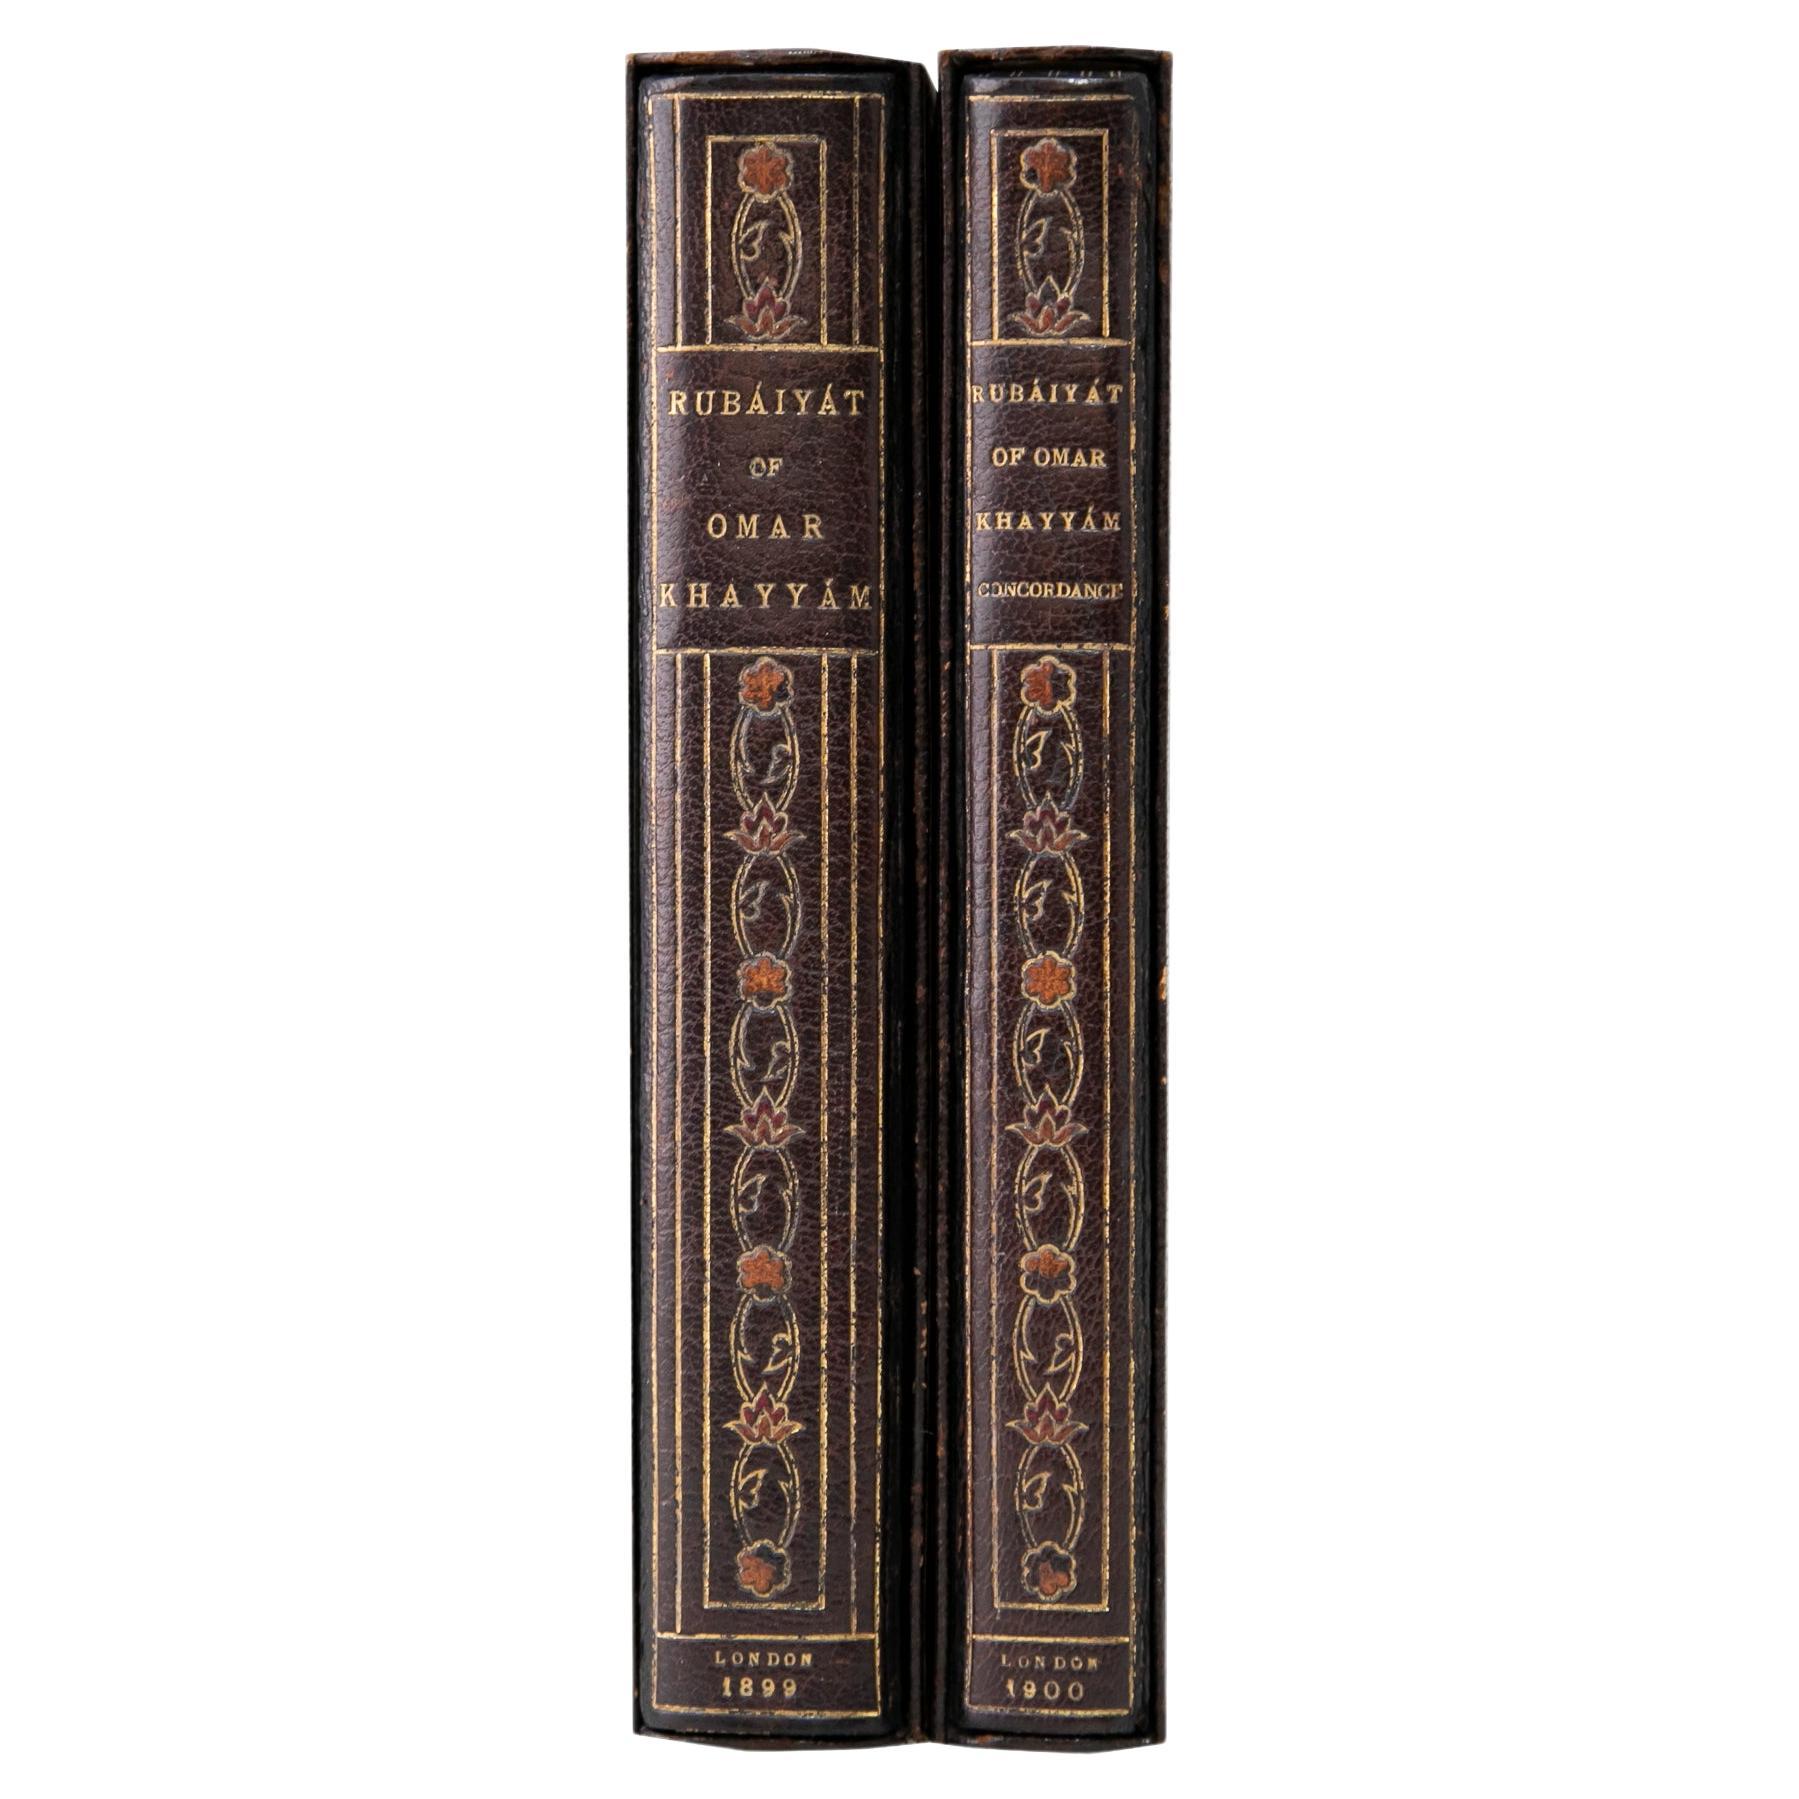 2 Volumes, Edward Fitzgerald, Rubáiyát of Omar Khayyám